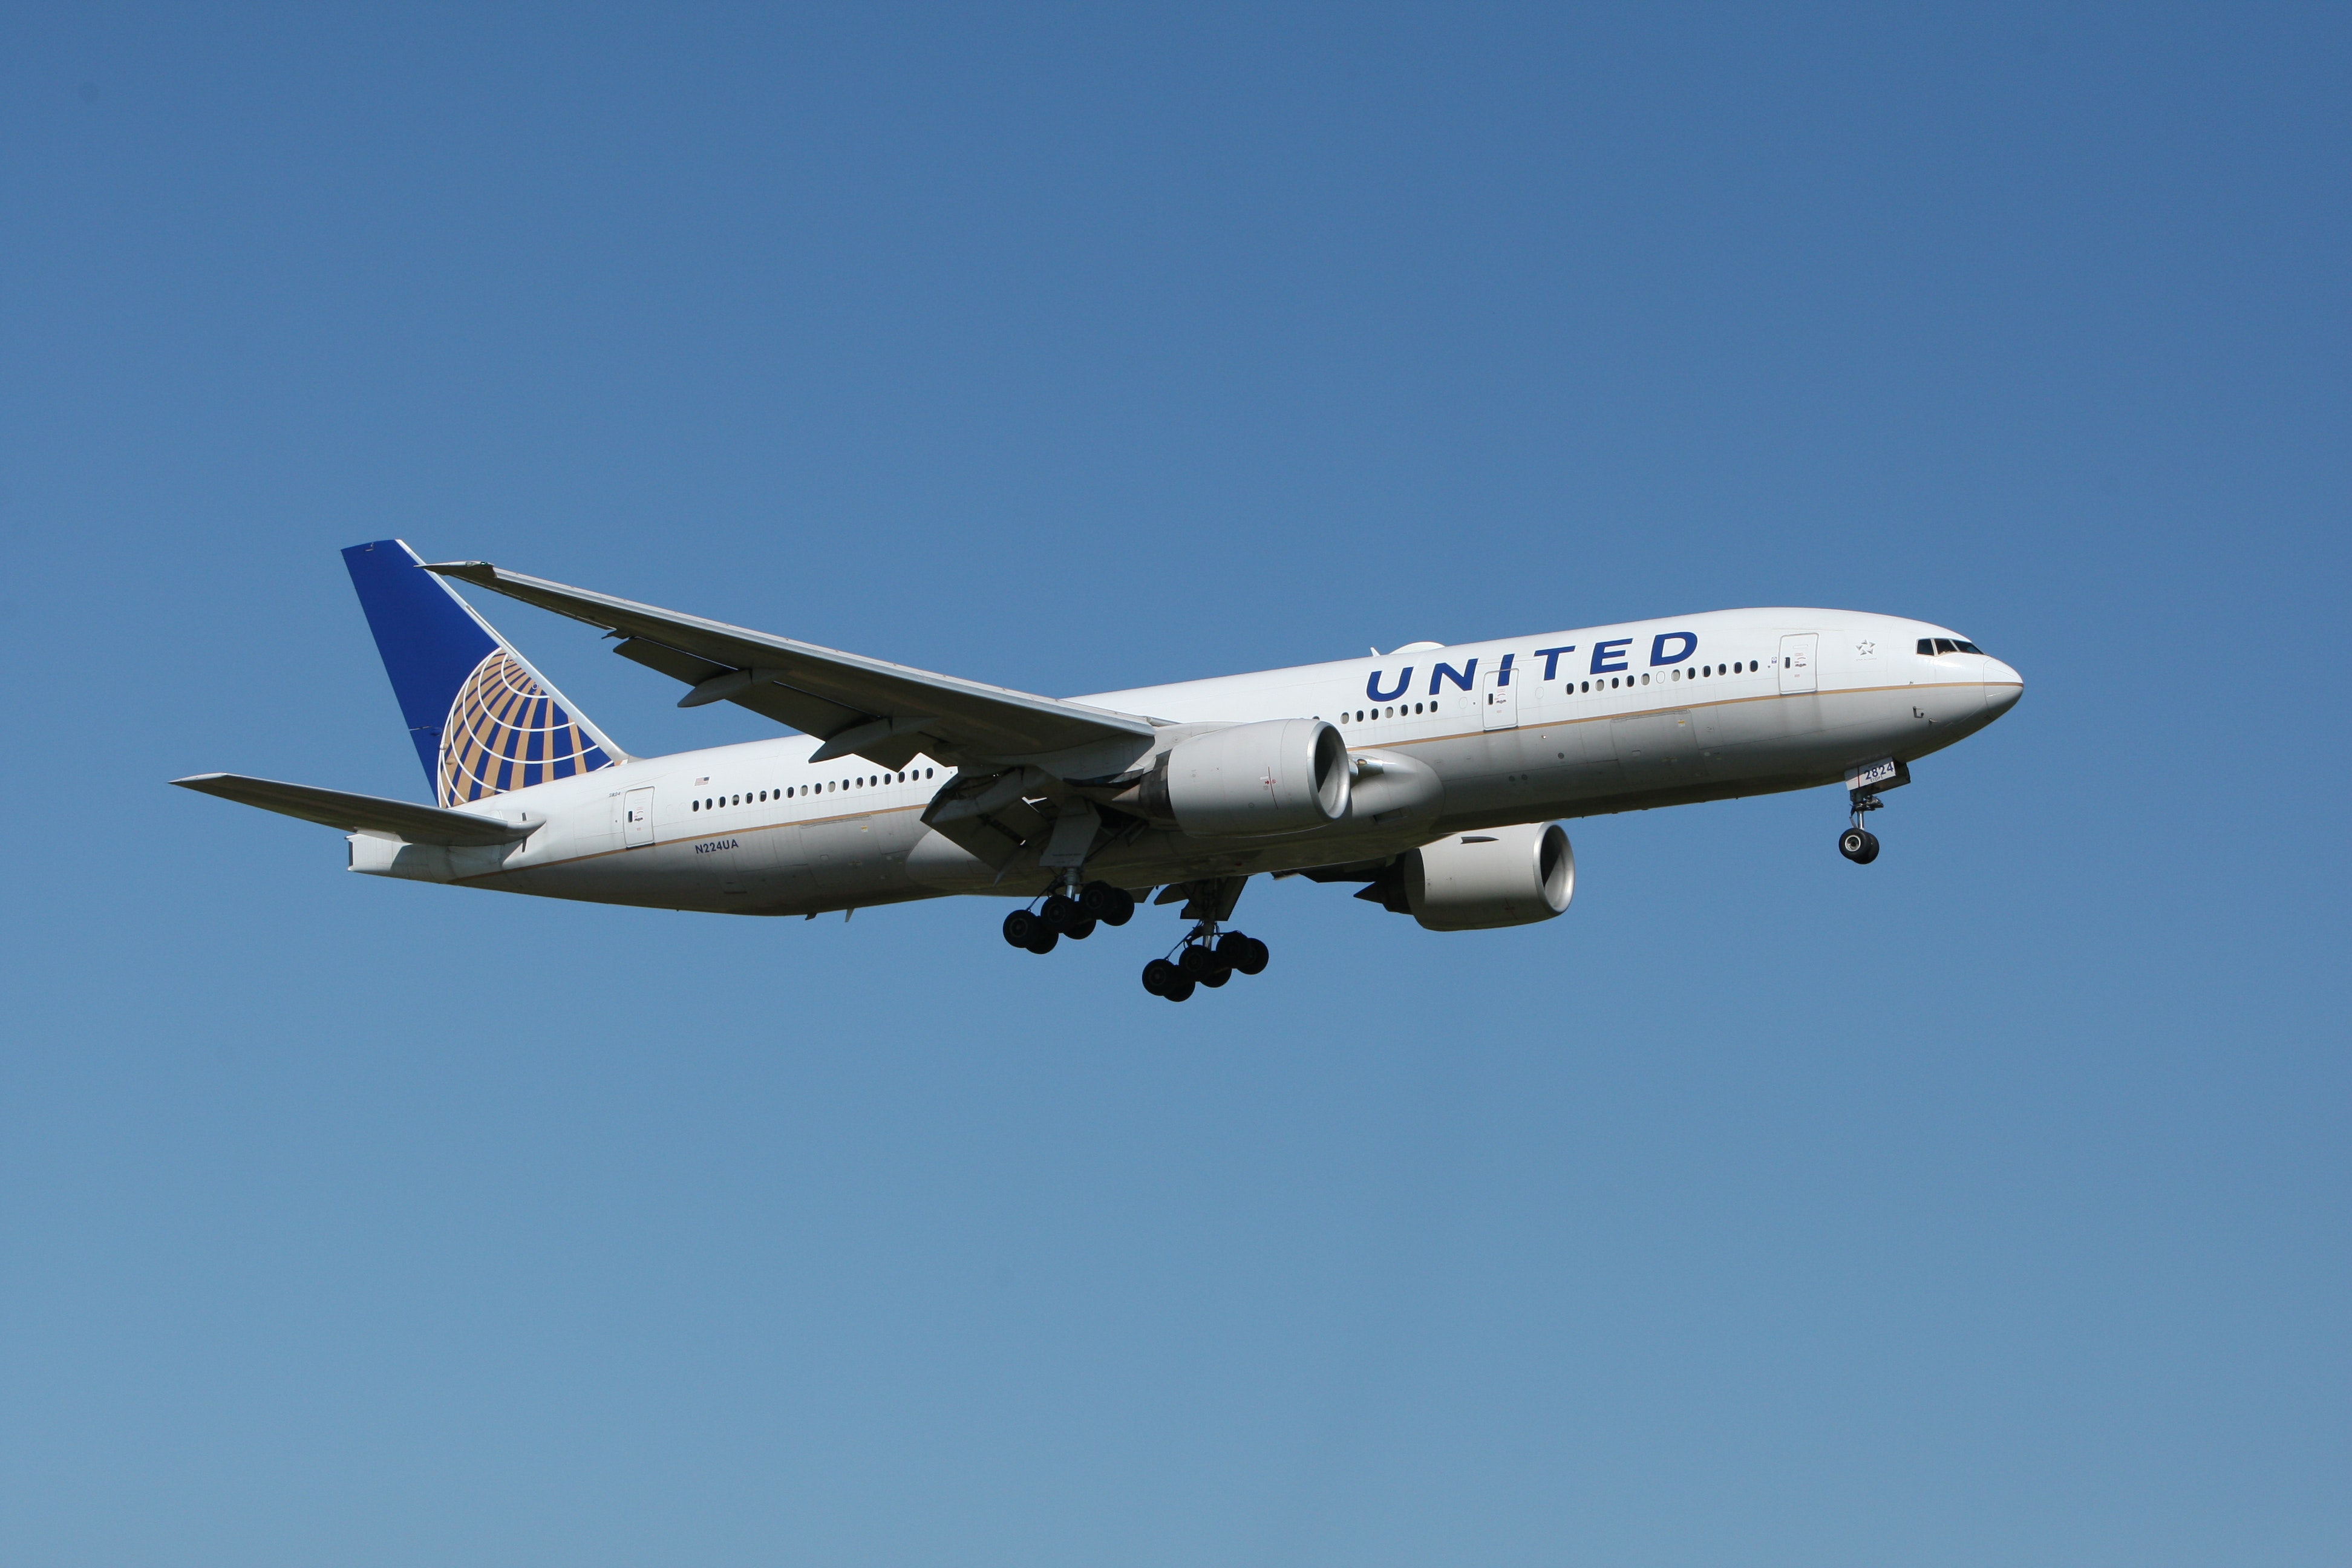 Döbbenetes, a leszállás előtt hagyta el a vészcsúszdát a United Airlines egyik járata: egy ház kertjében találták meg